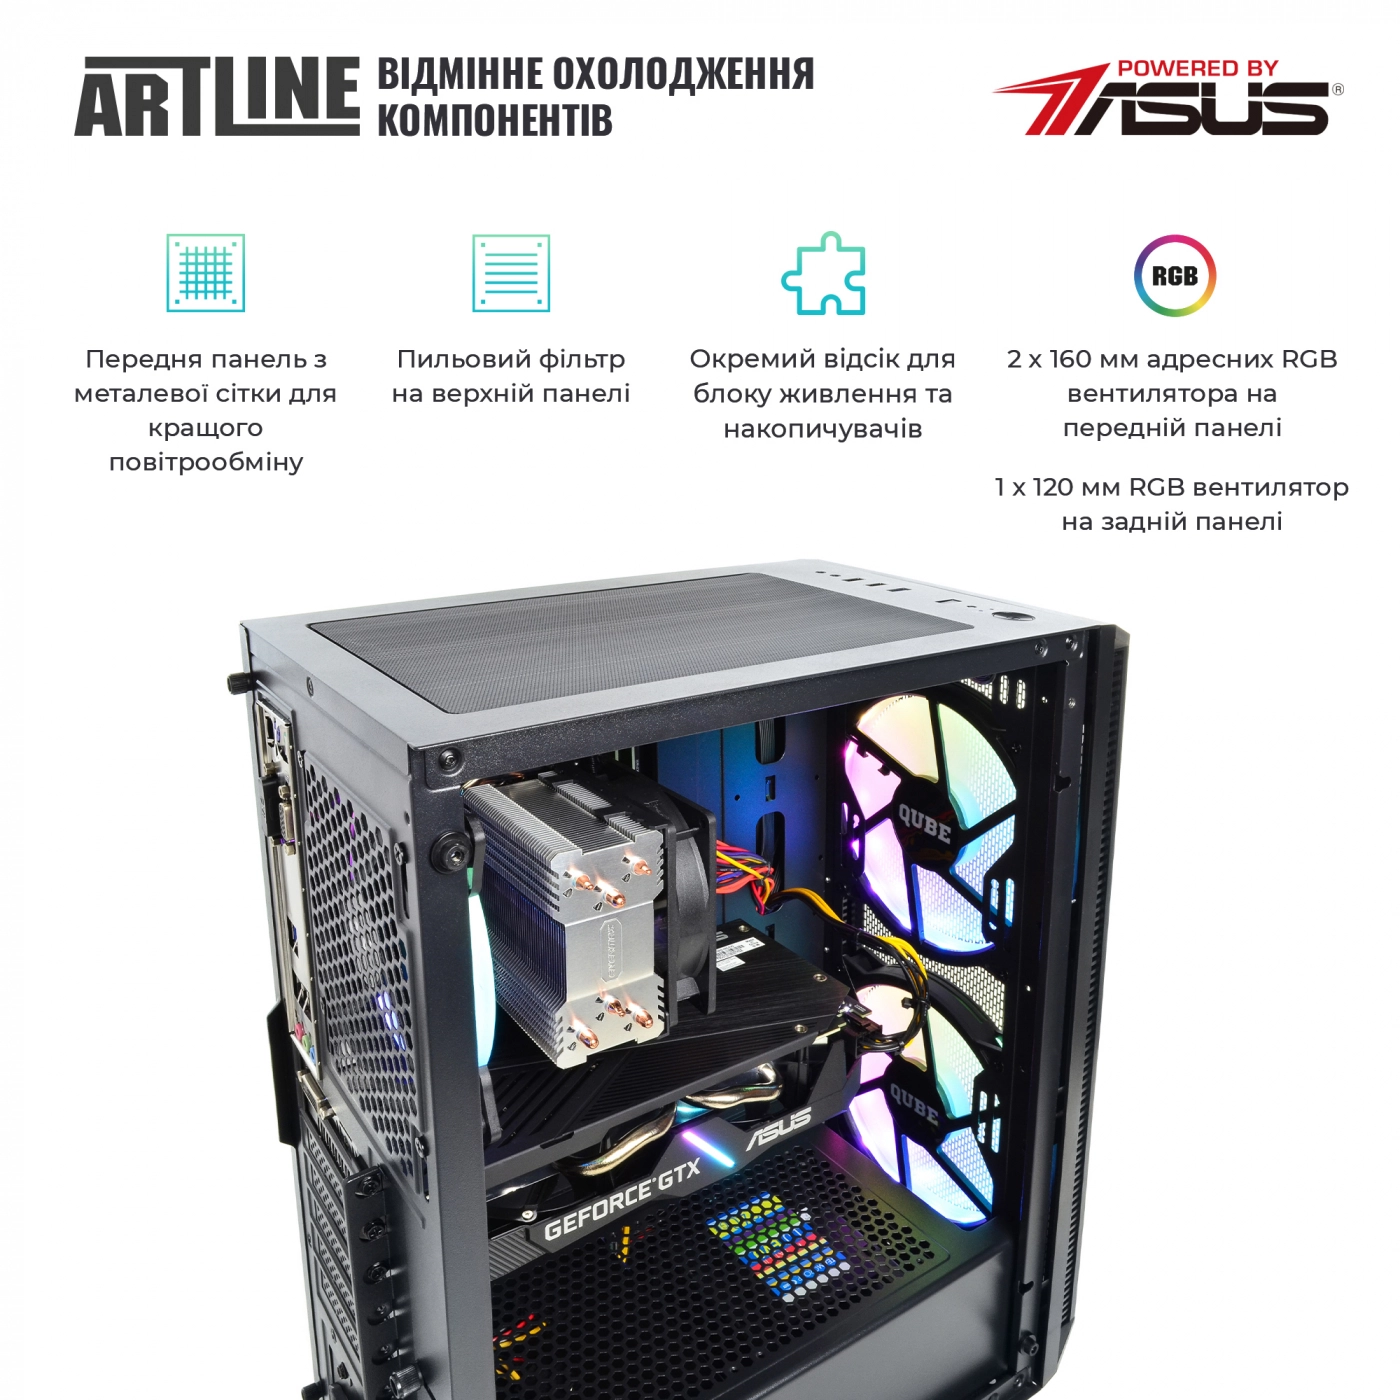 Купить Компьютер ARTLINE Gaming X55v29 - фото 2